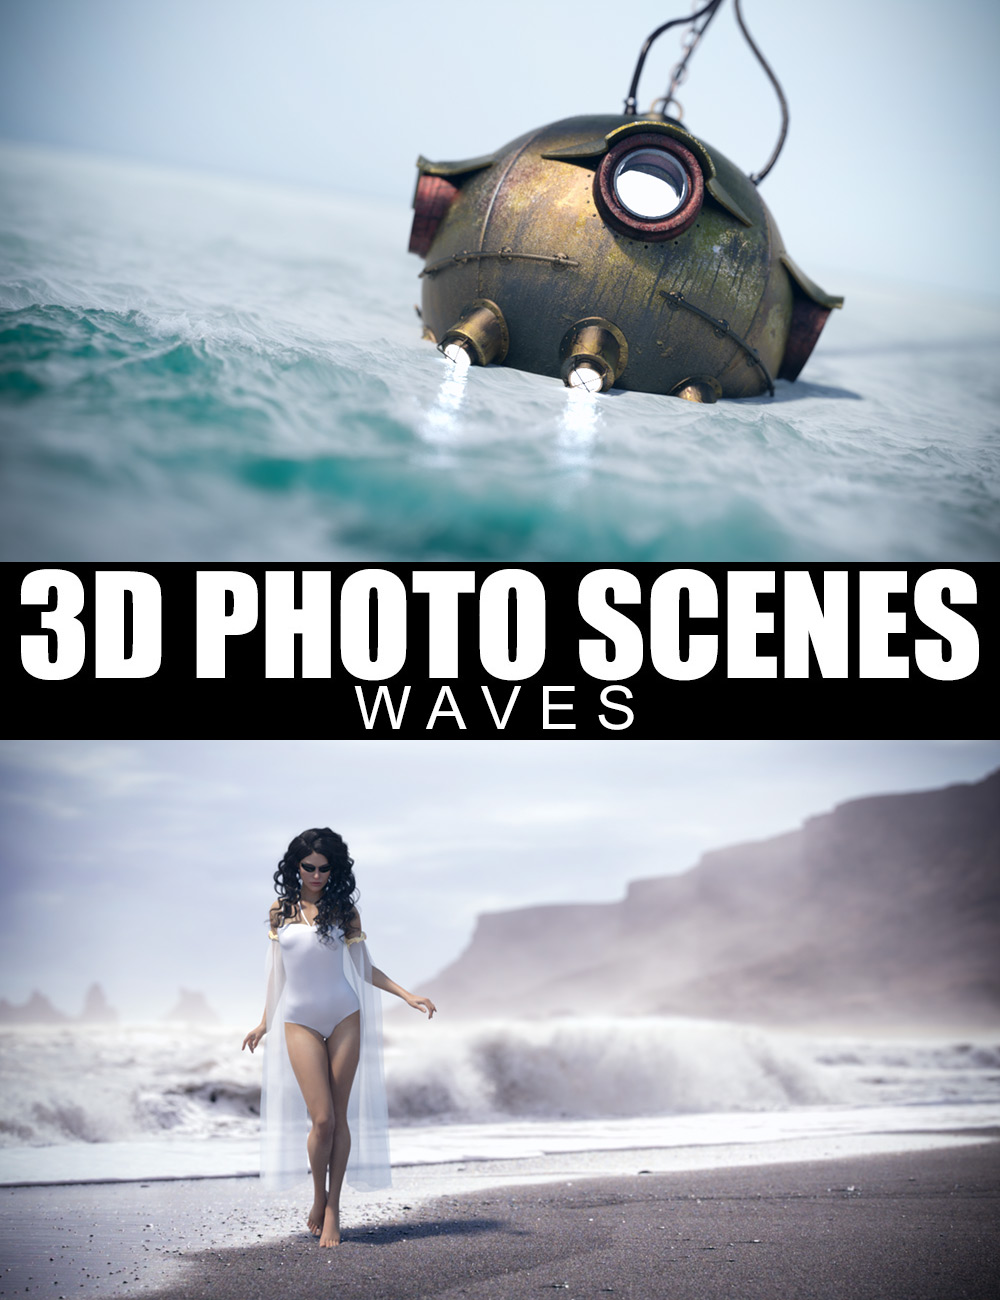 3D Photo Scenes - Waves by: Dreamlight, 3D Models by Daz 3D